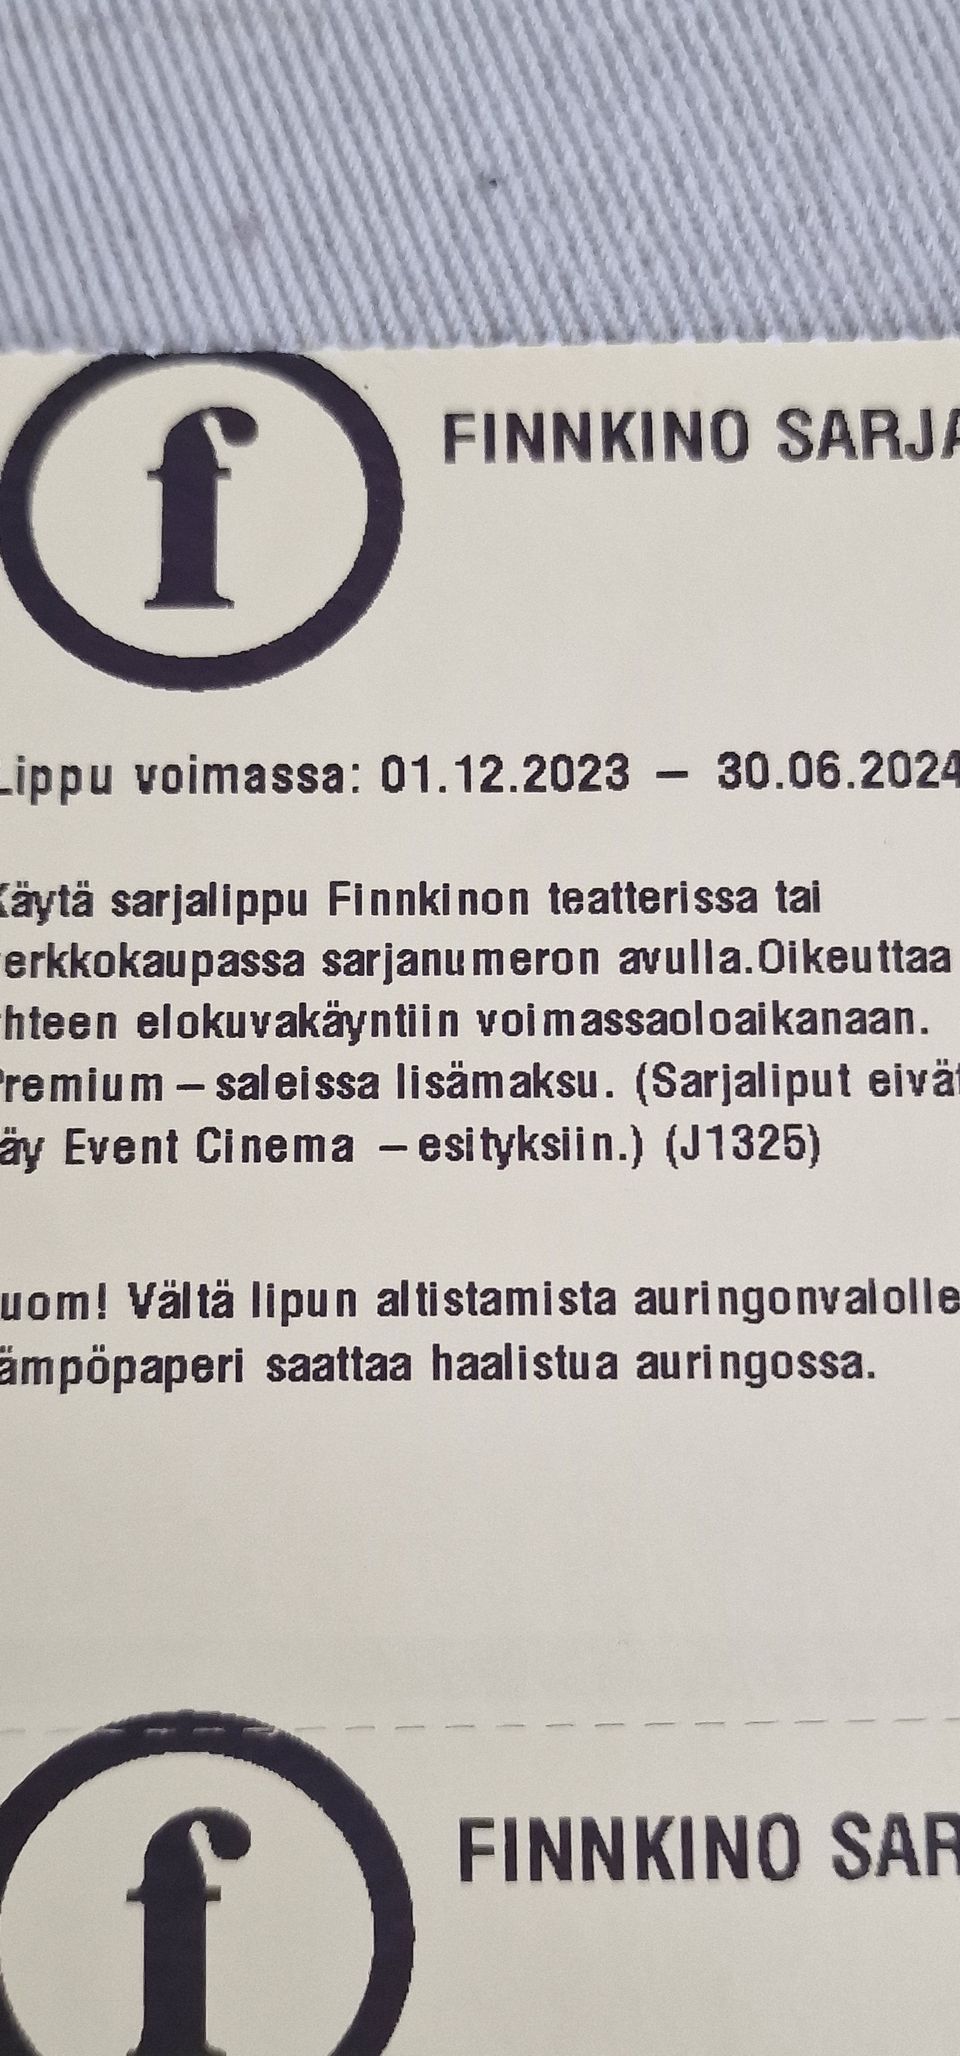 Finnkino elokuva lippuja 10 euroa kpl/ tarjoa